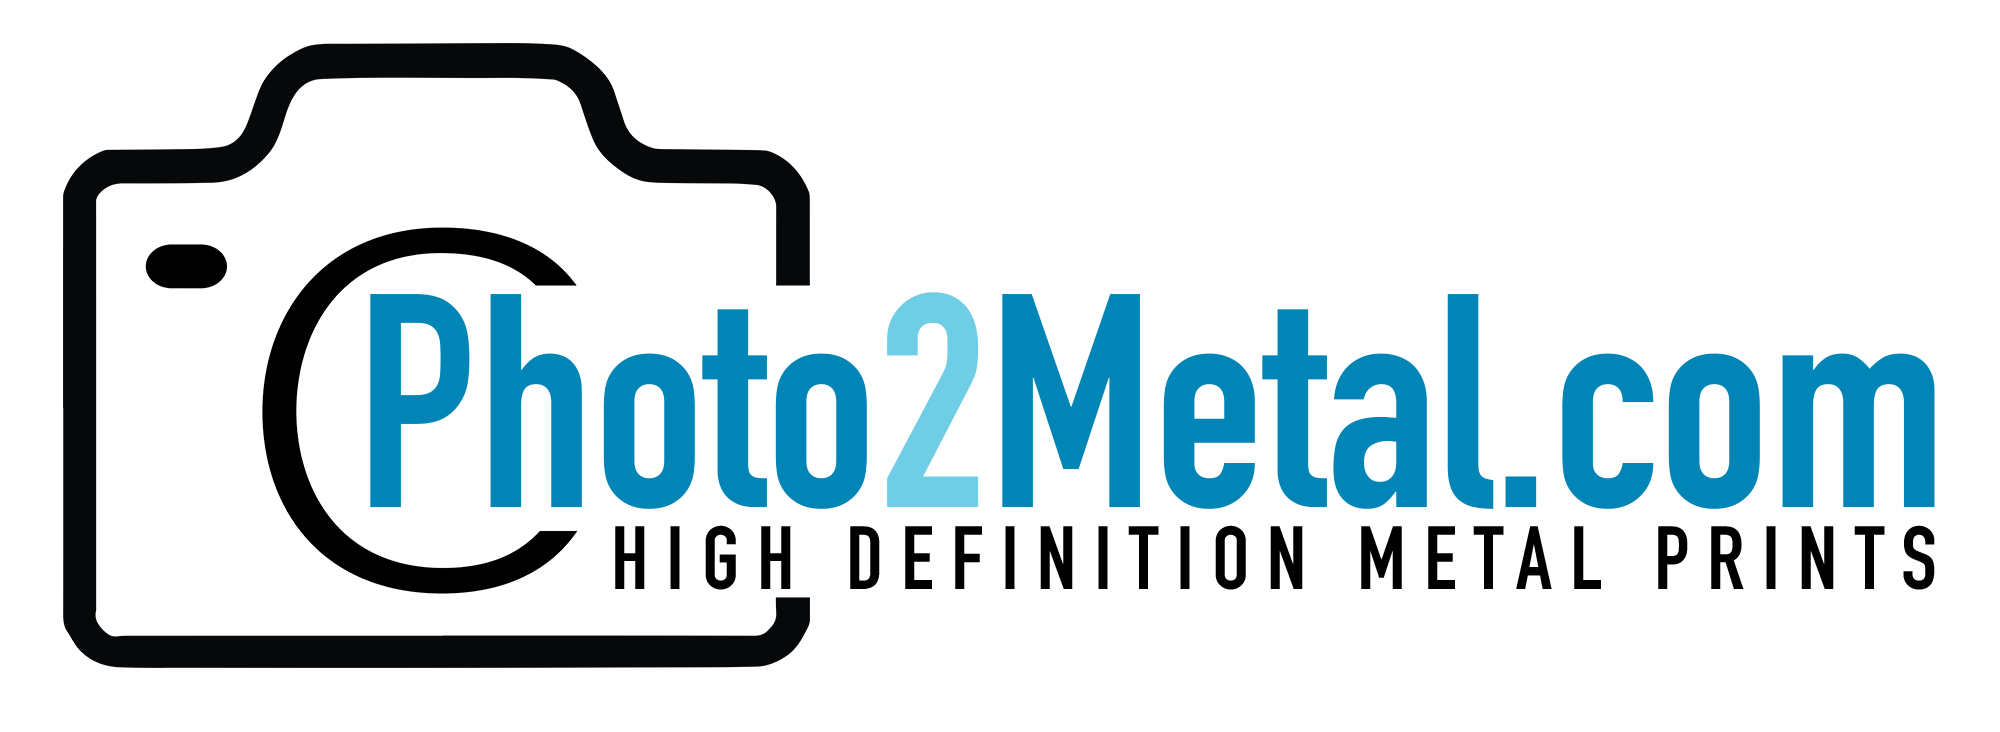 photo2metal logo